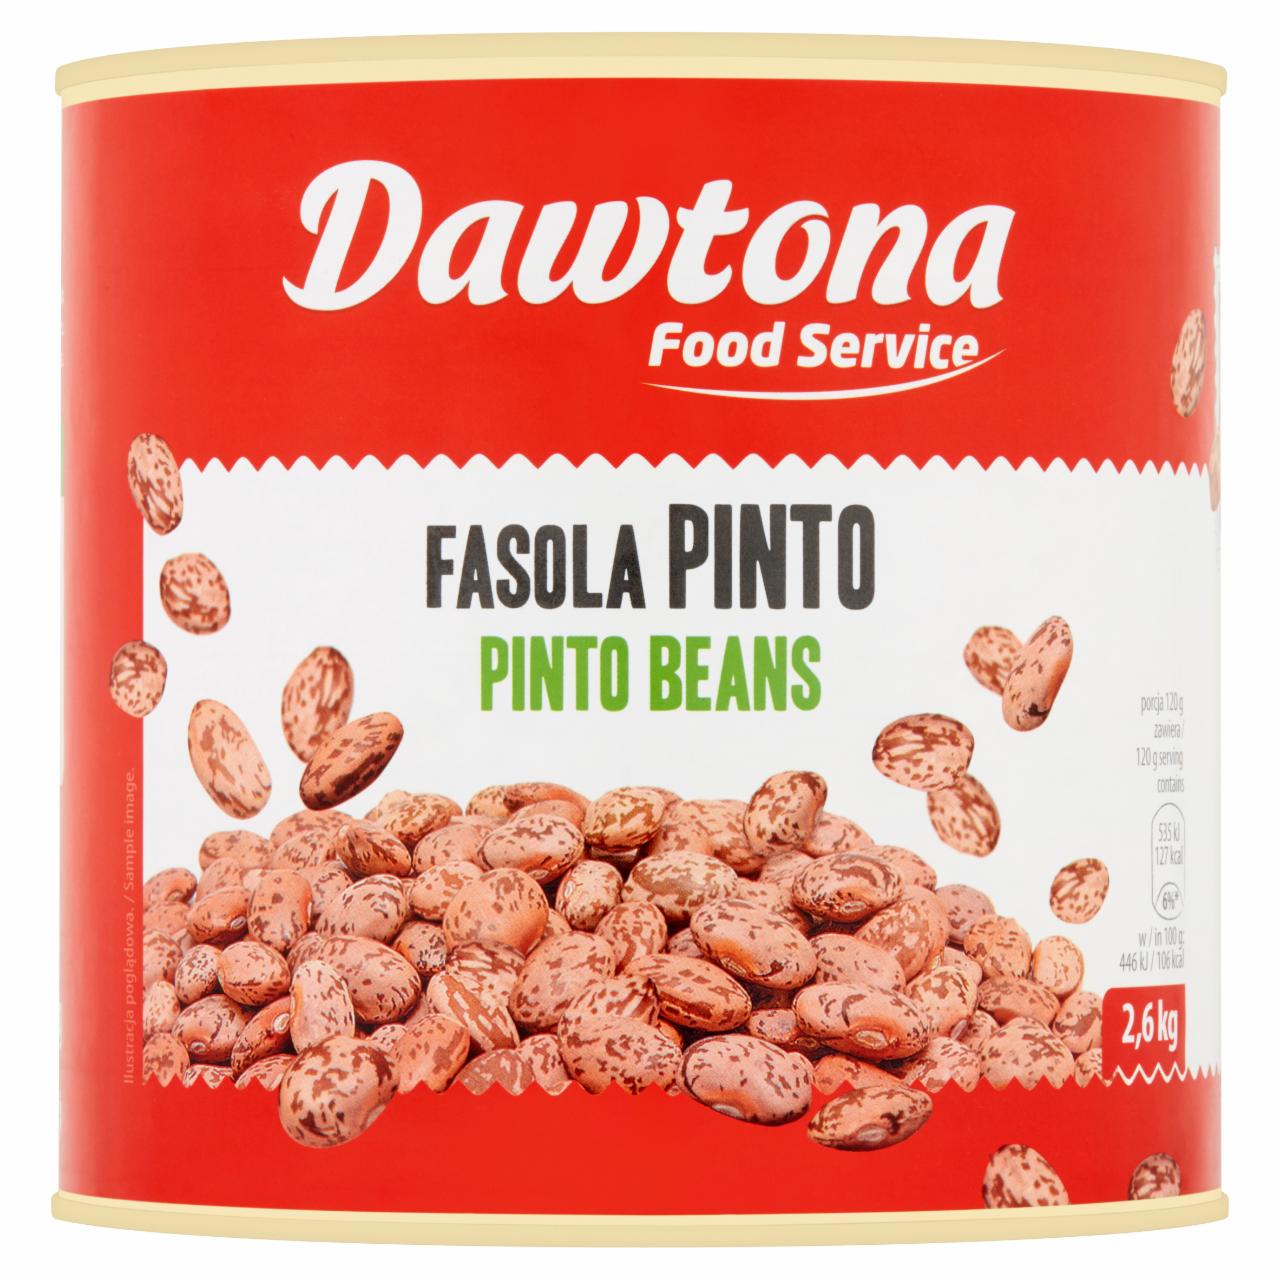 Zdjęcia - Dawtona Food Service Fasola pinto 2,6 kg